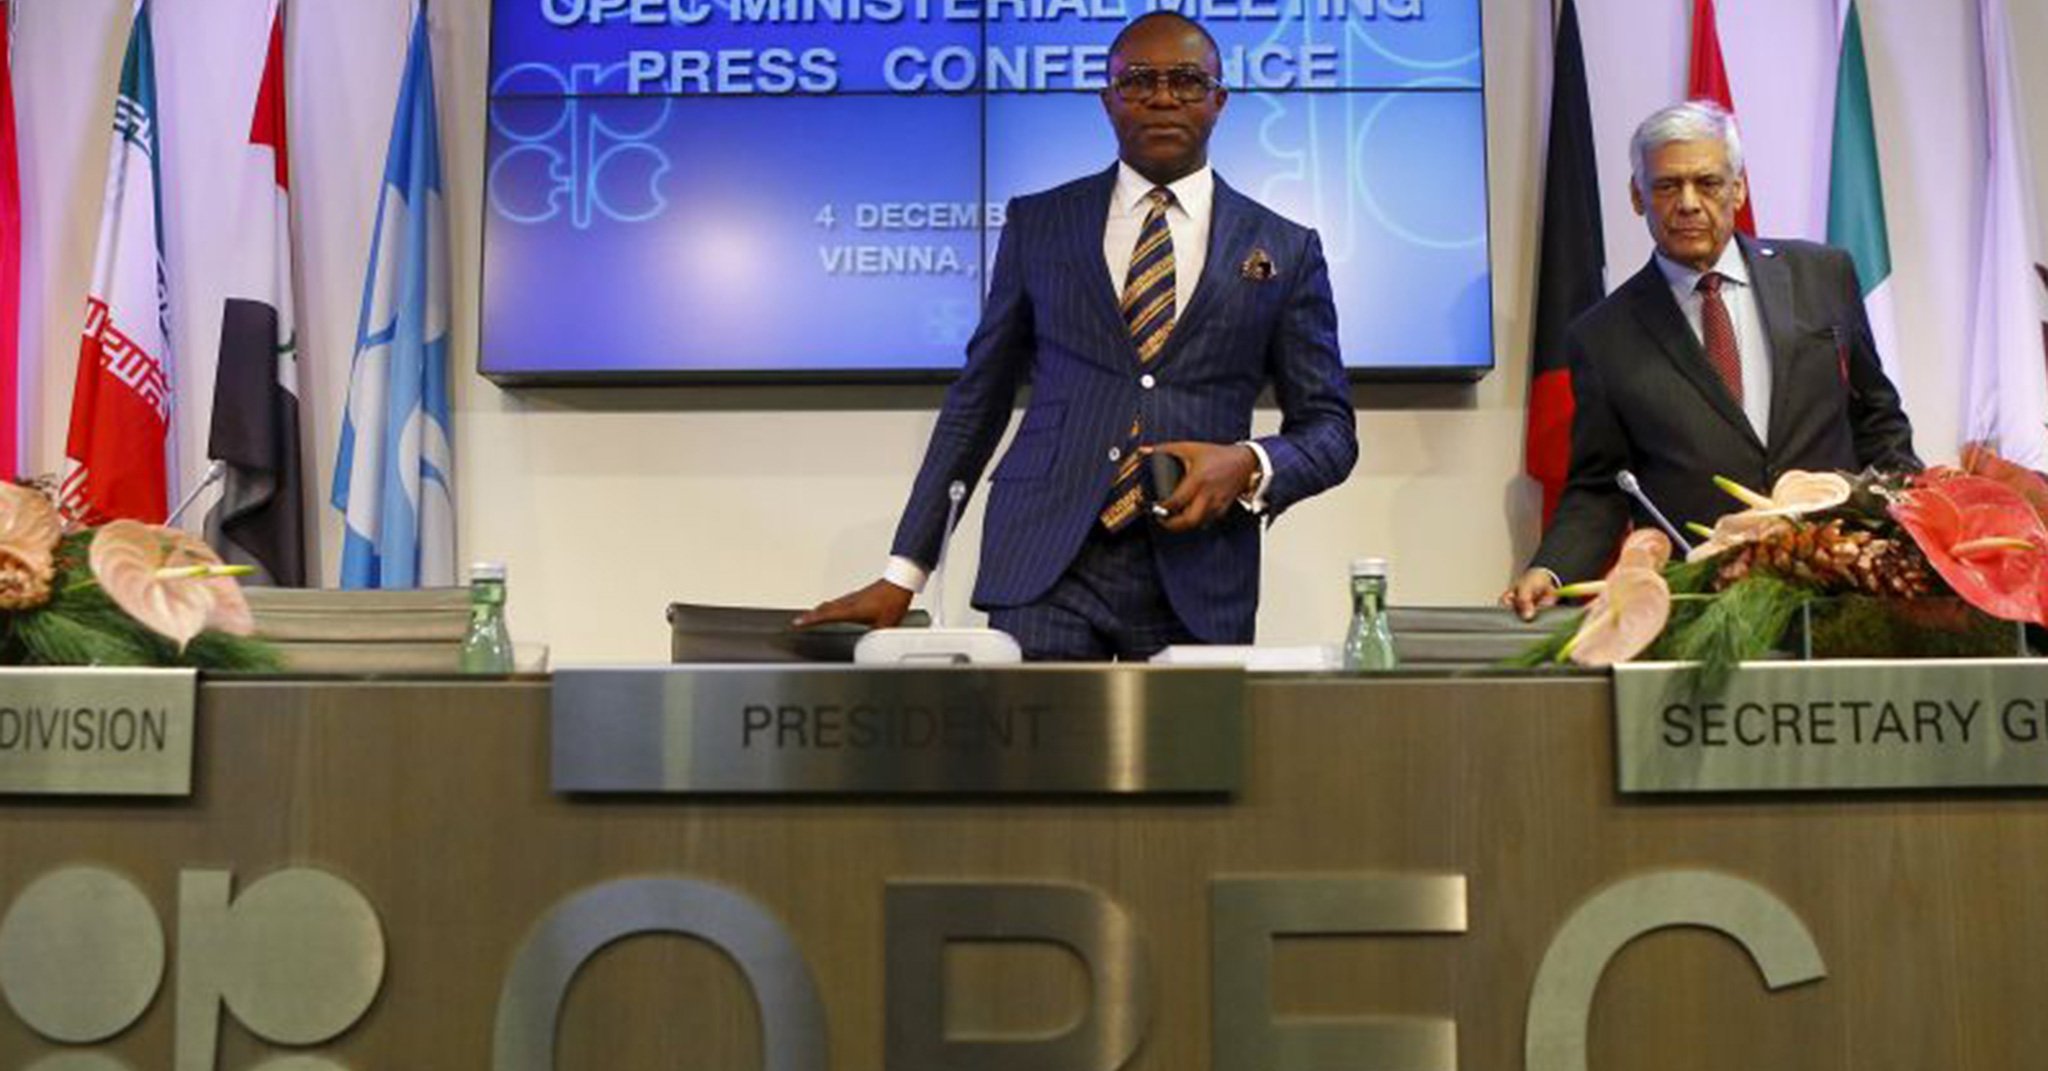 El líder de la OPEP asegura que la situación de los precios amerita una reunión extraordinaria